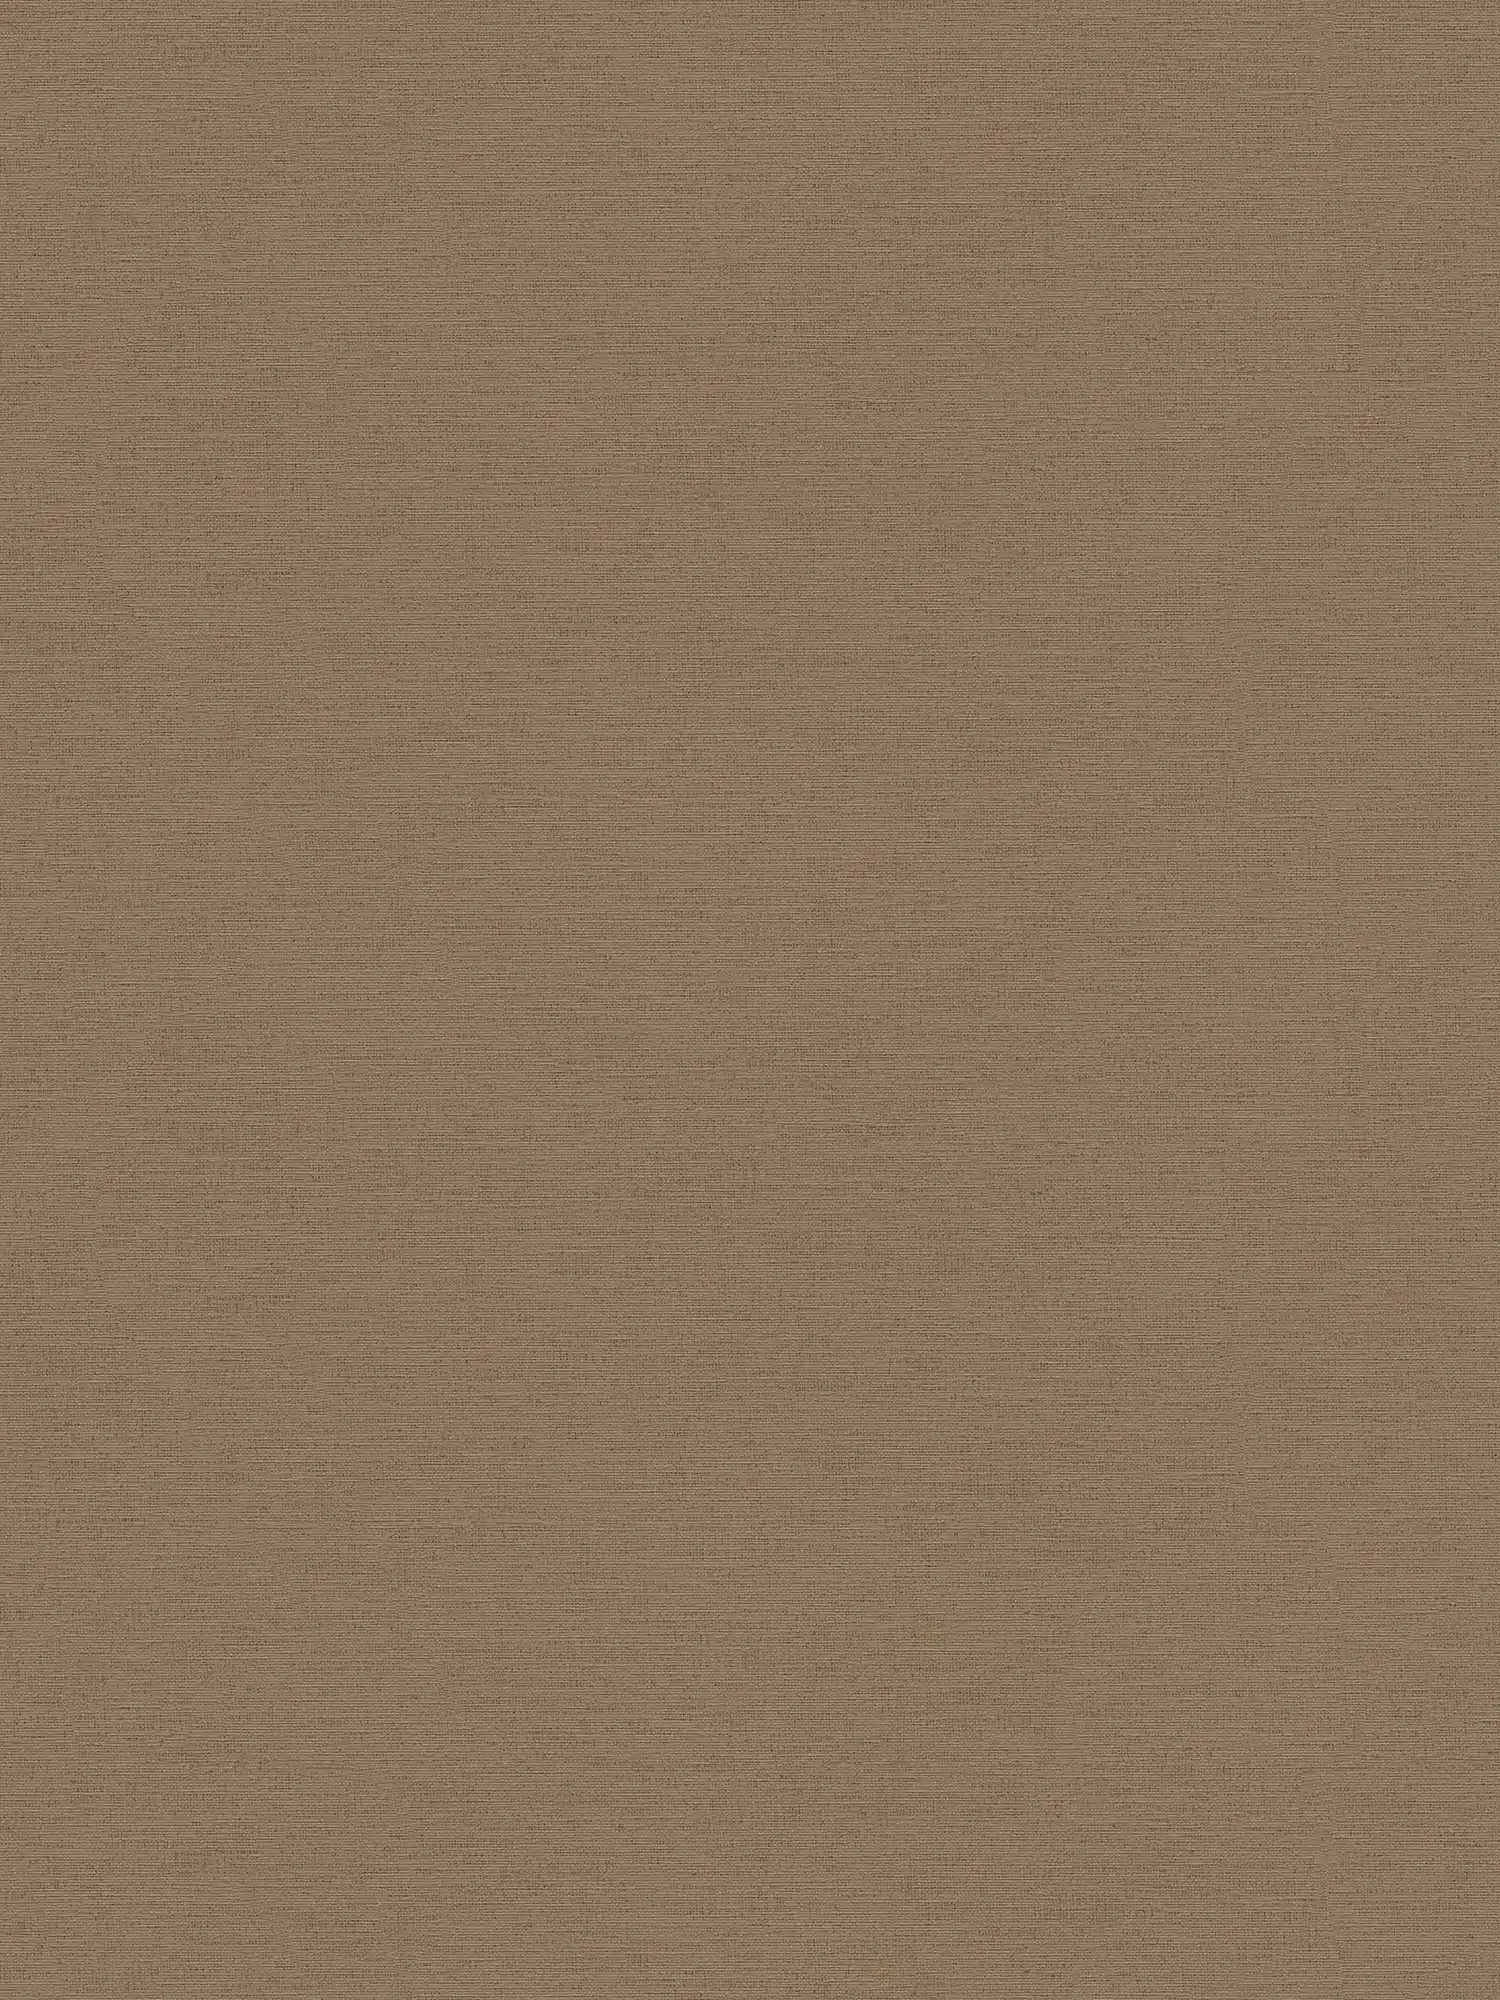 Wallpaper brown linen look & embossed structure in textile look
